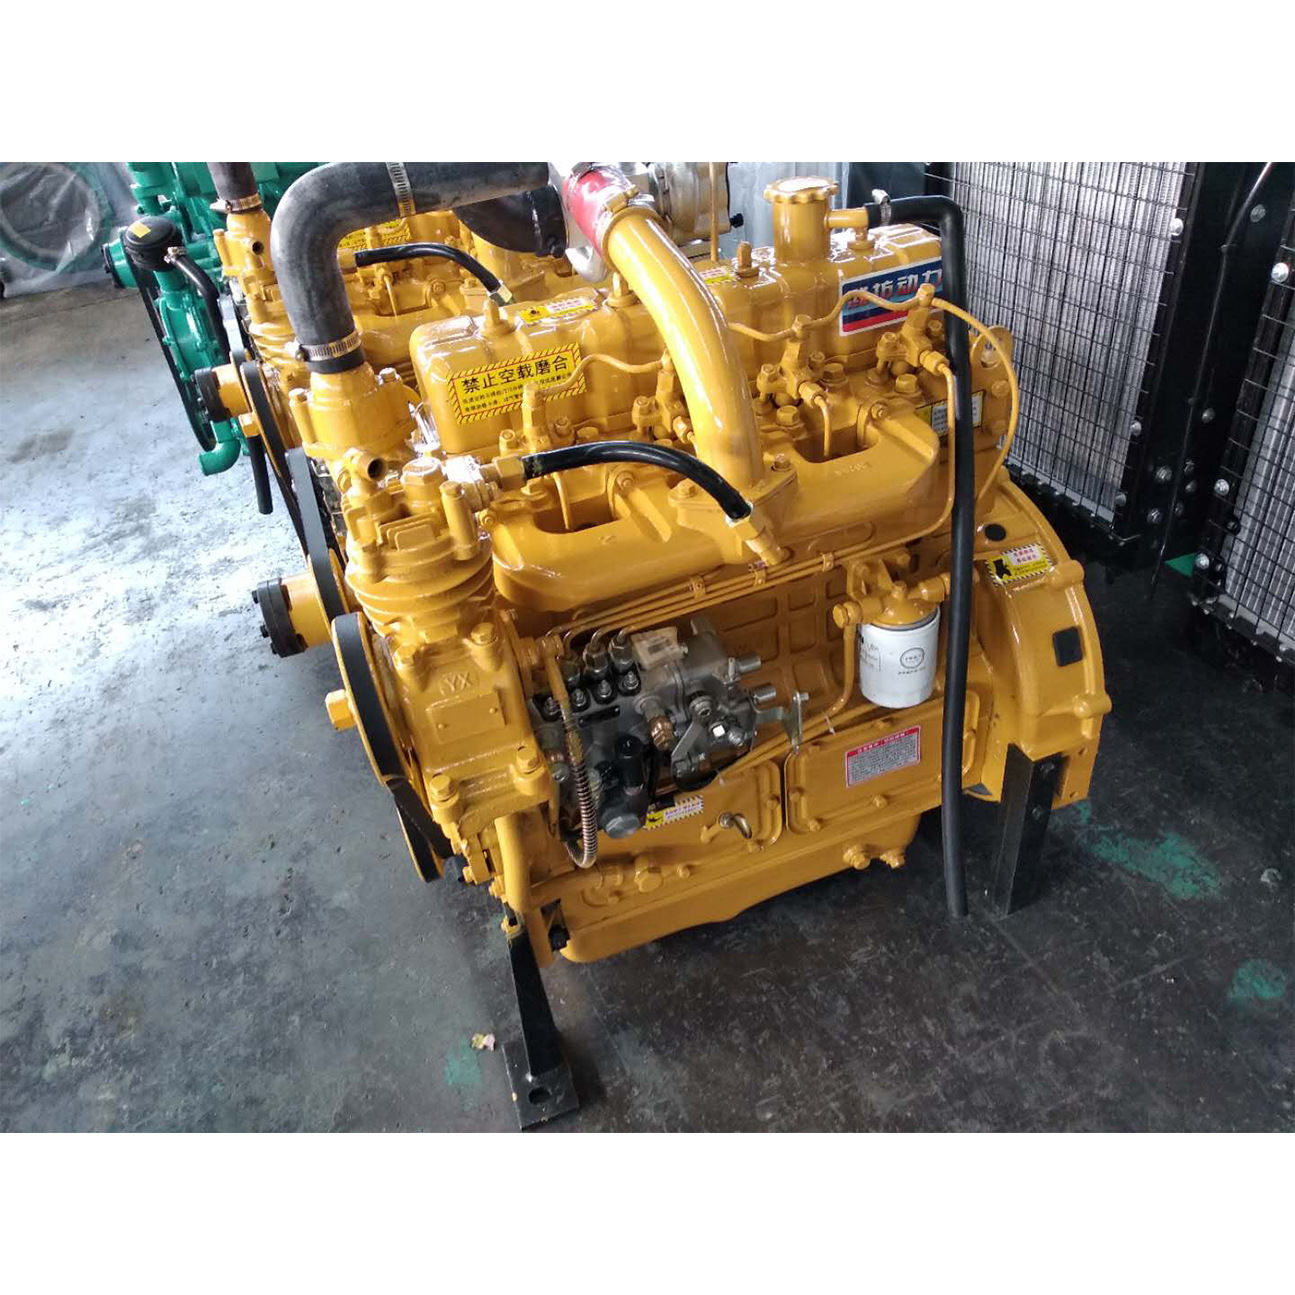 Weifang 4102 Diesel Engine Machine для дизельного машиностроения Diesel Engineer Machinery с ASTAR 4102